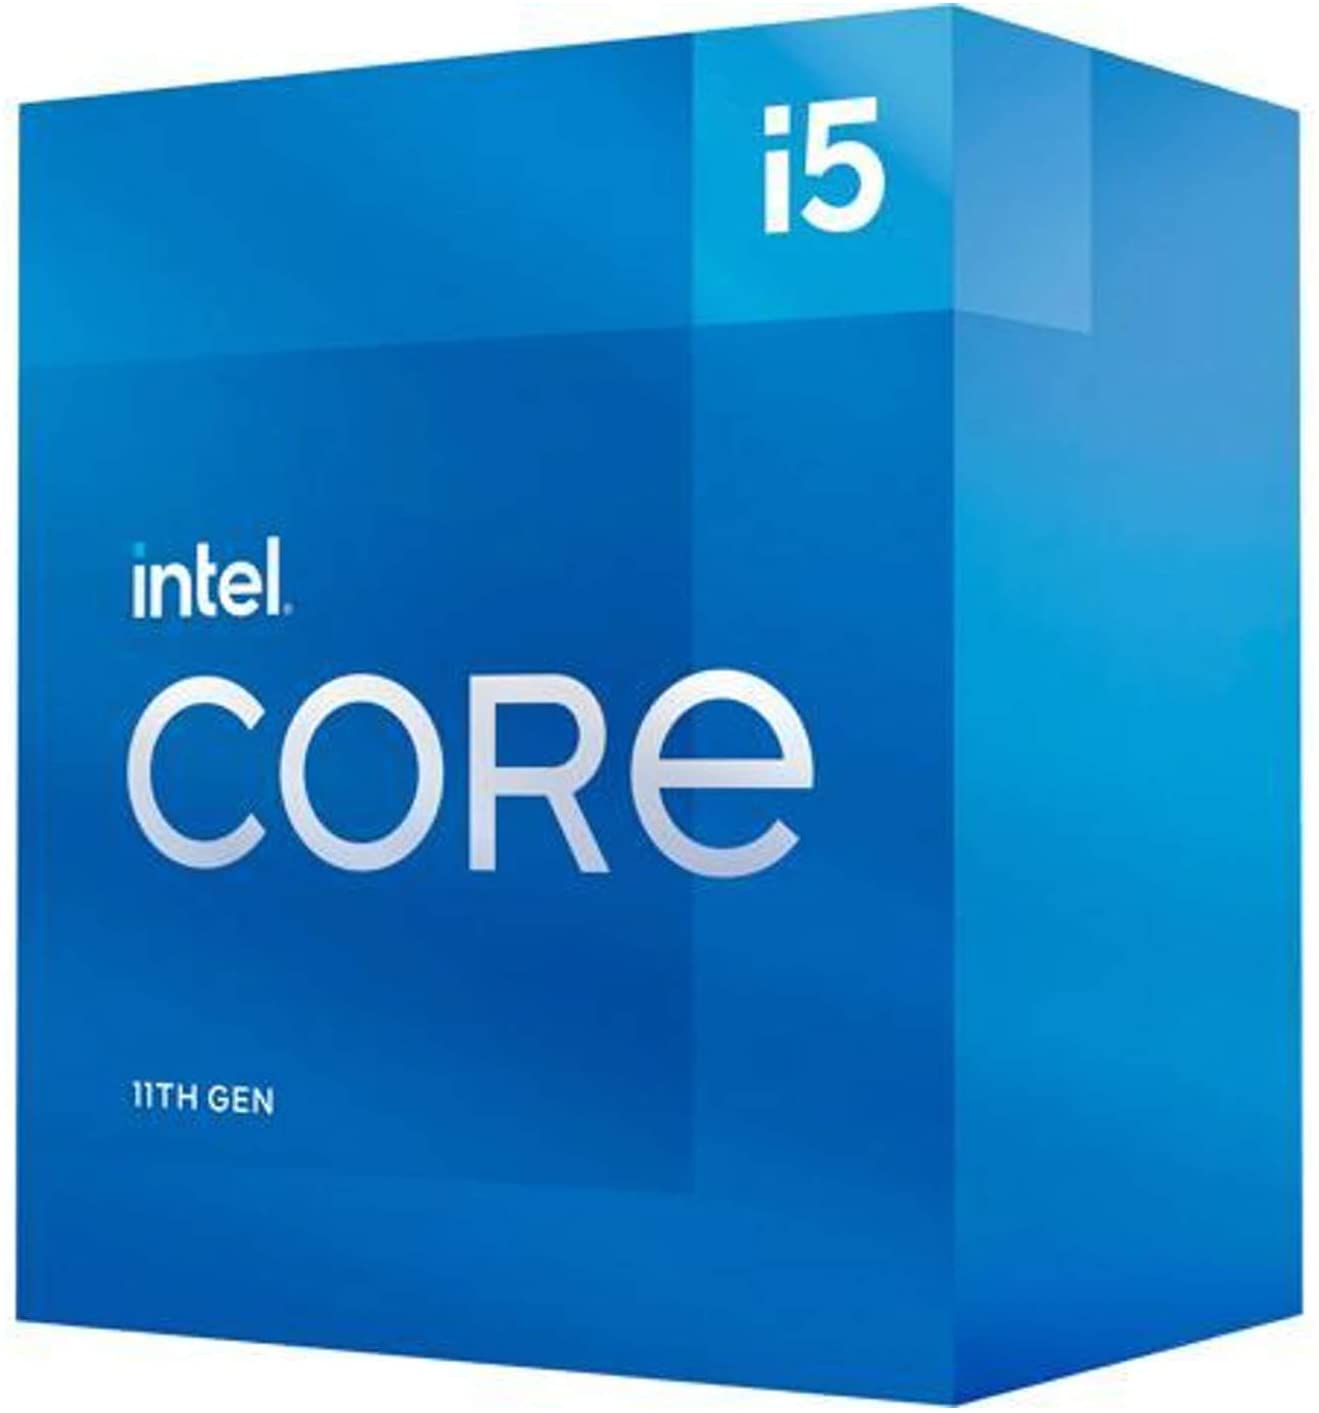 CPU INTEL CORE I5-11500 2.7GHZ 12MB LGA1200 11TH